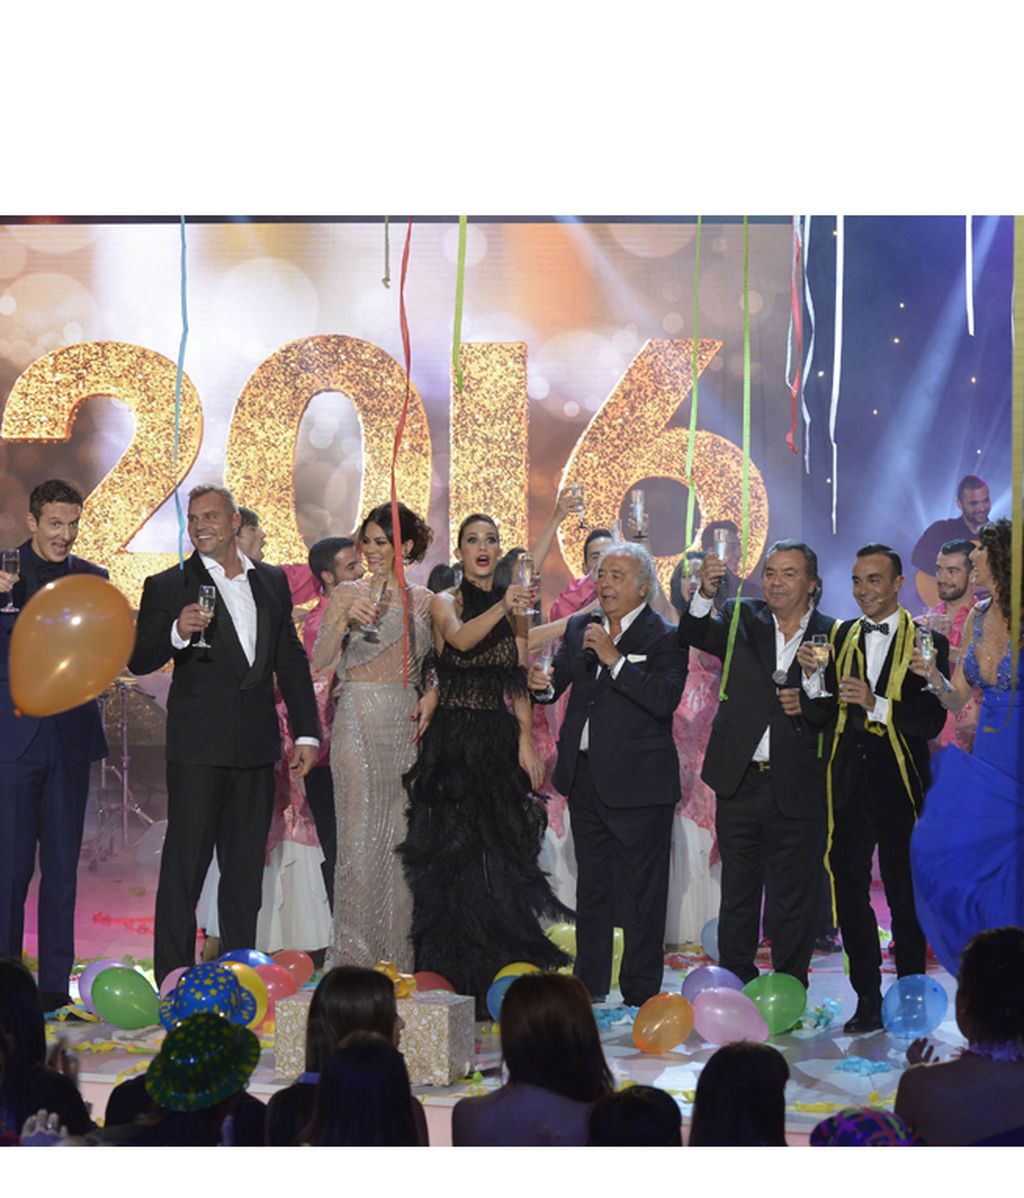 Música, humor y estilo para despedir 2015 en Telecinco